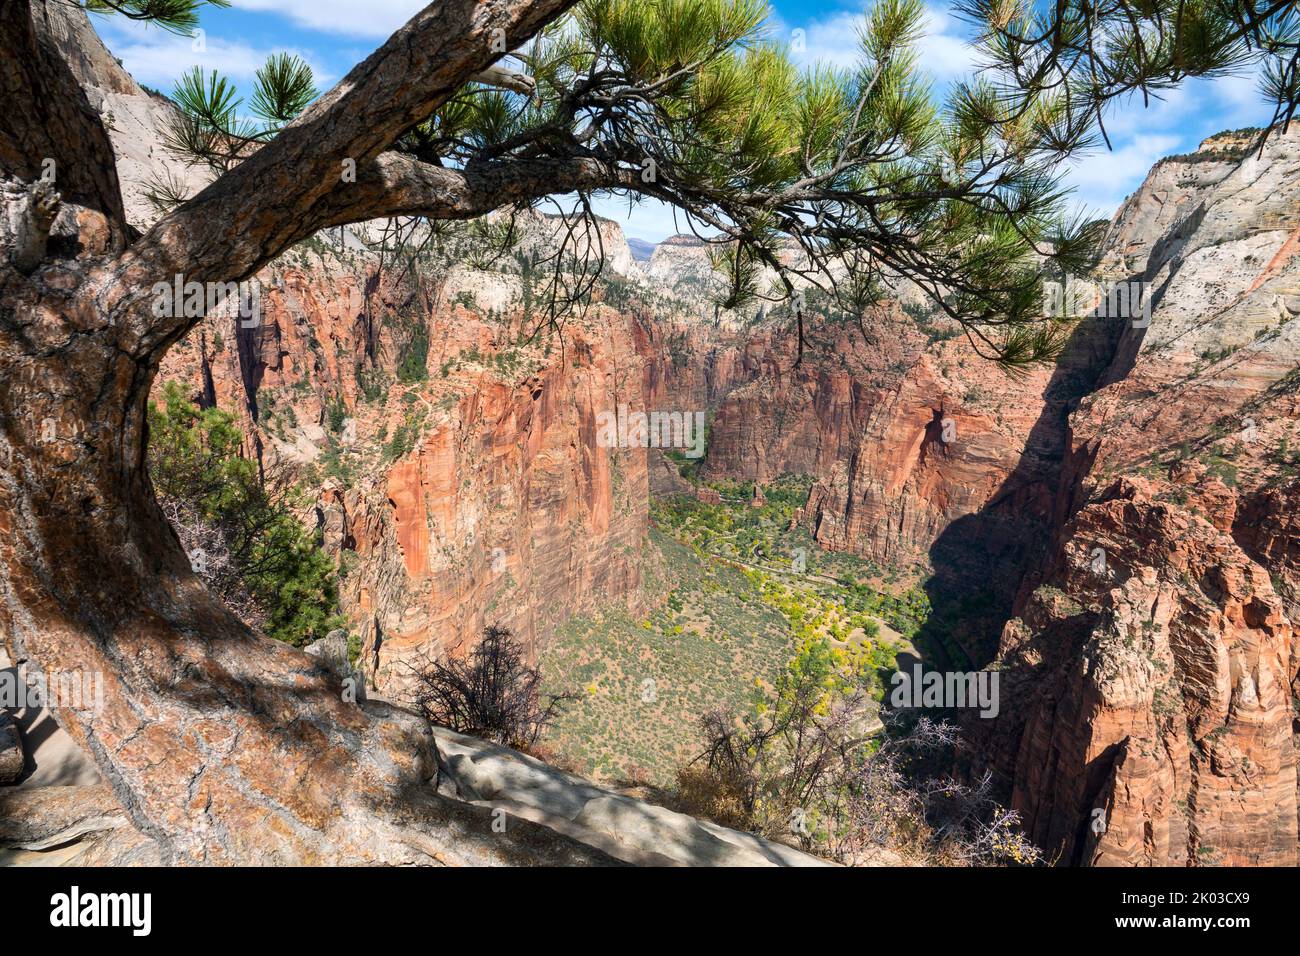 El Parque Nacional Zion está ubicado en el suroeste de Utah en la frontera con Arizona. Tiene una superficie de 579 kö² y se encuentra entre 1128 m y 2660 m de altitud. Angels Landing, vista al valle del río Virgen Foto de stock